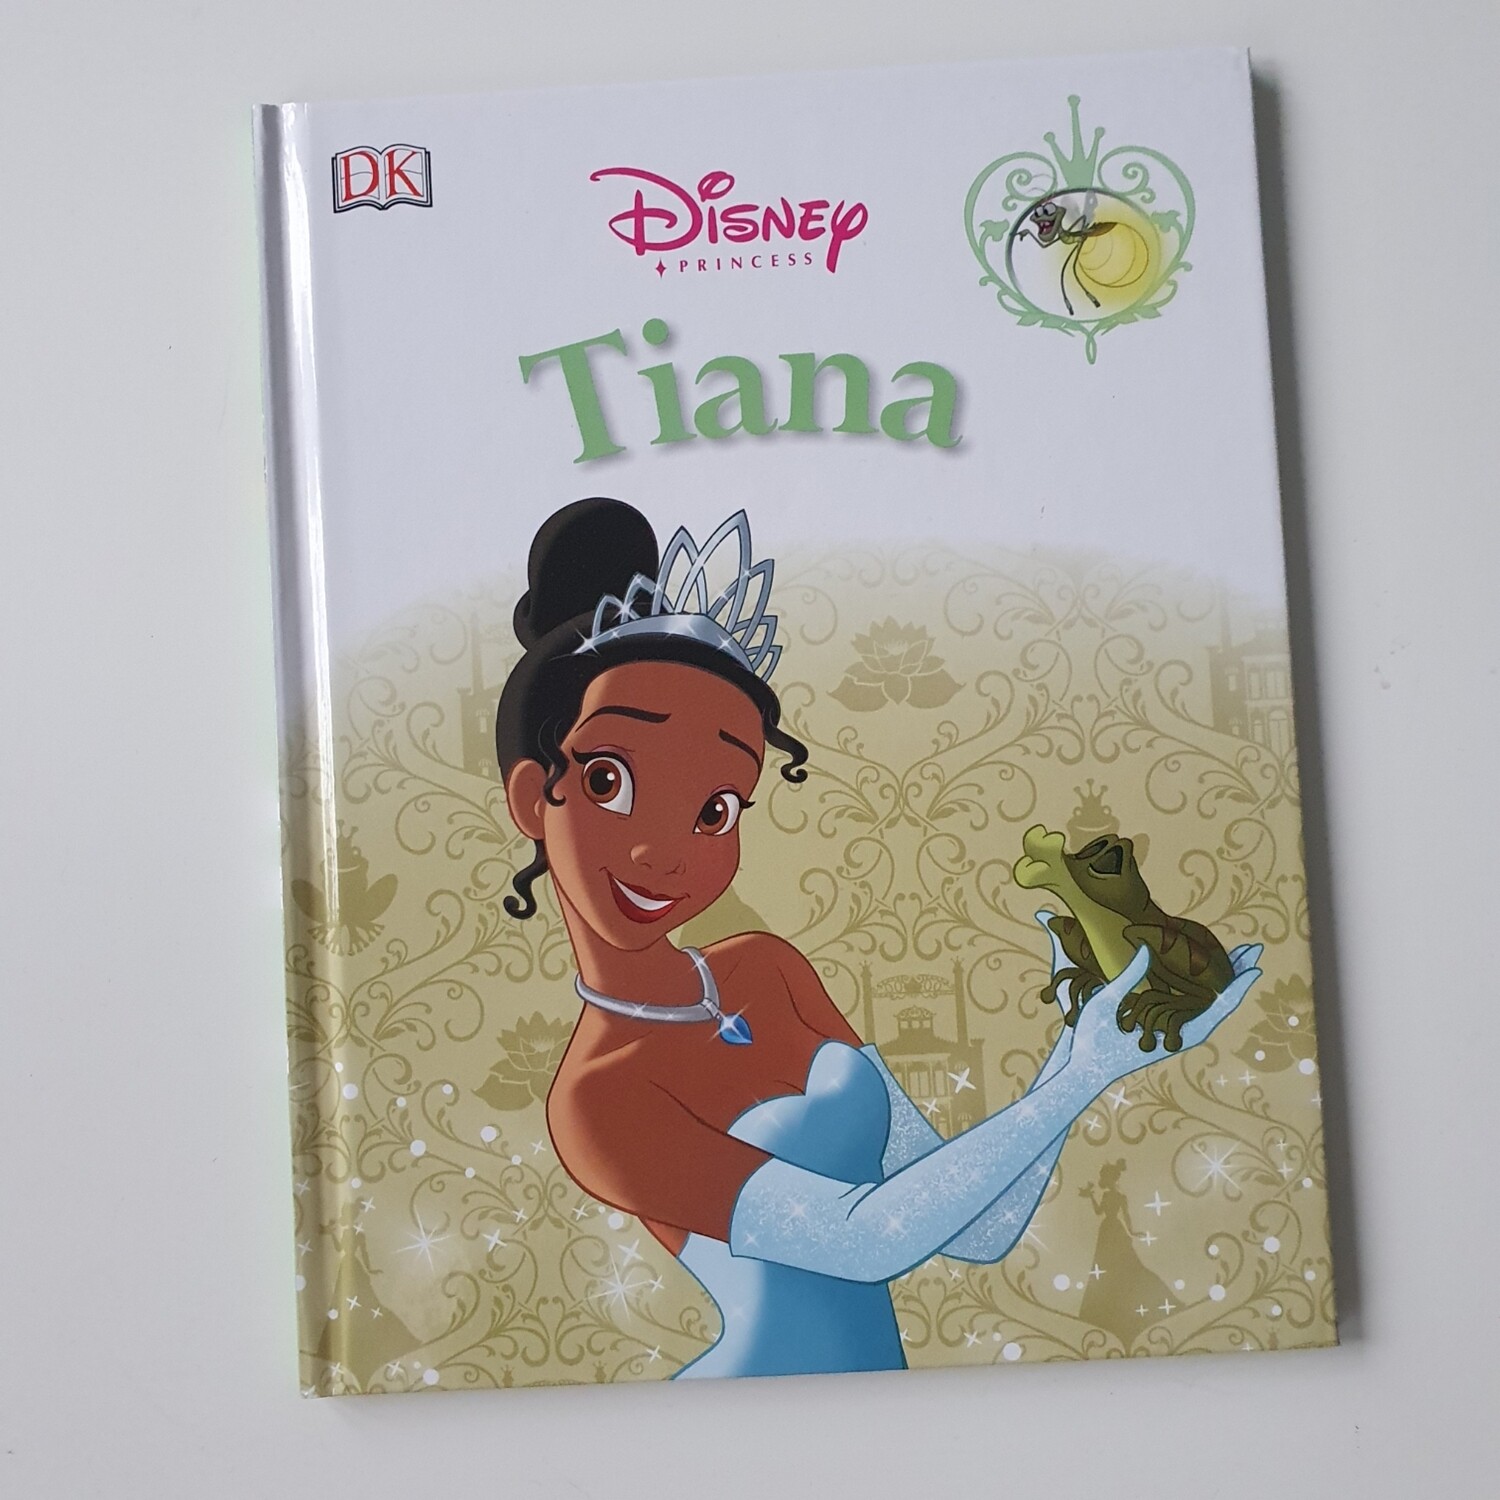 Princess and the Frog - Tiana